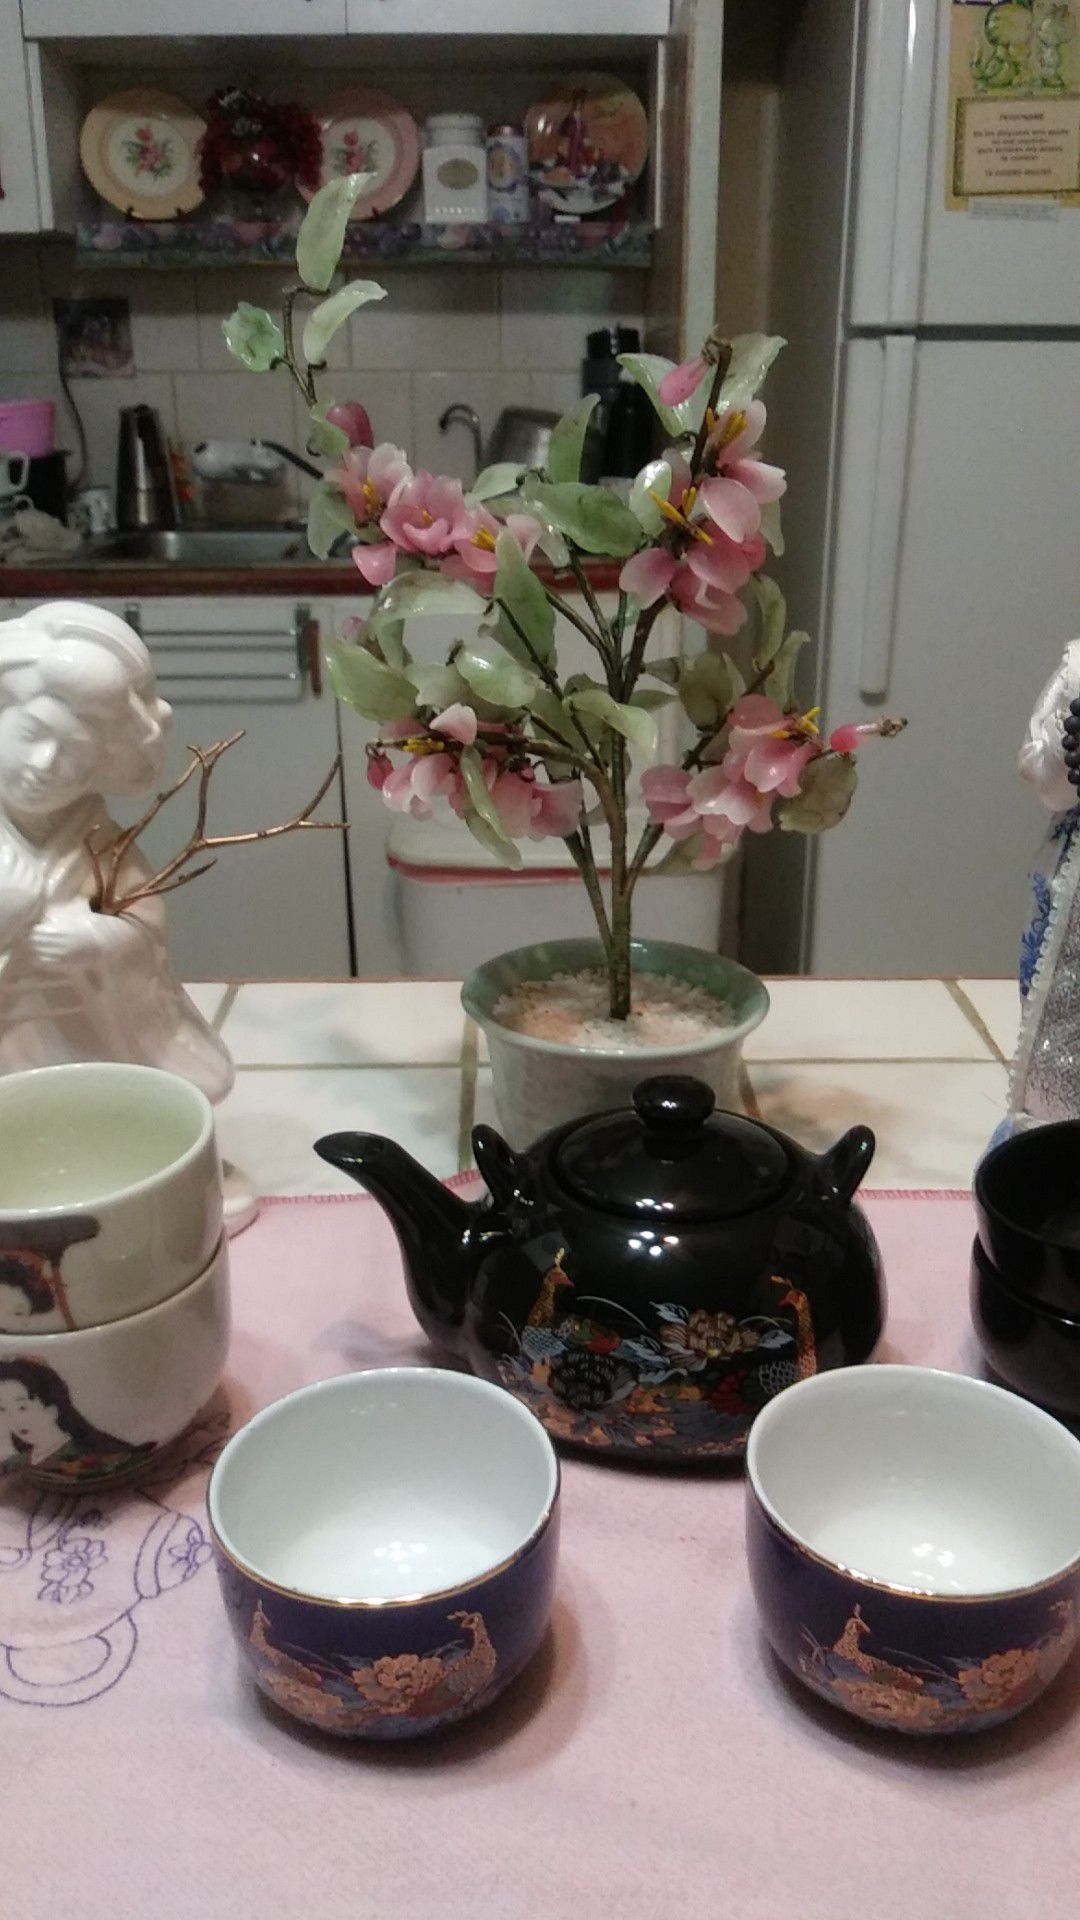 Oriental tea set with sculptures